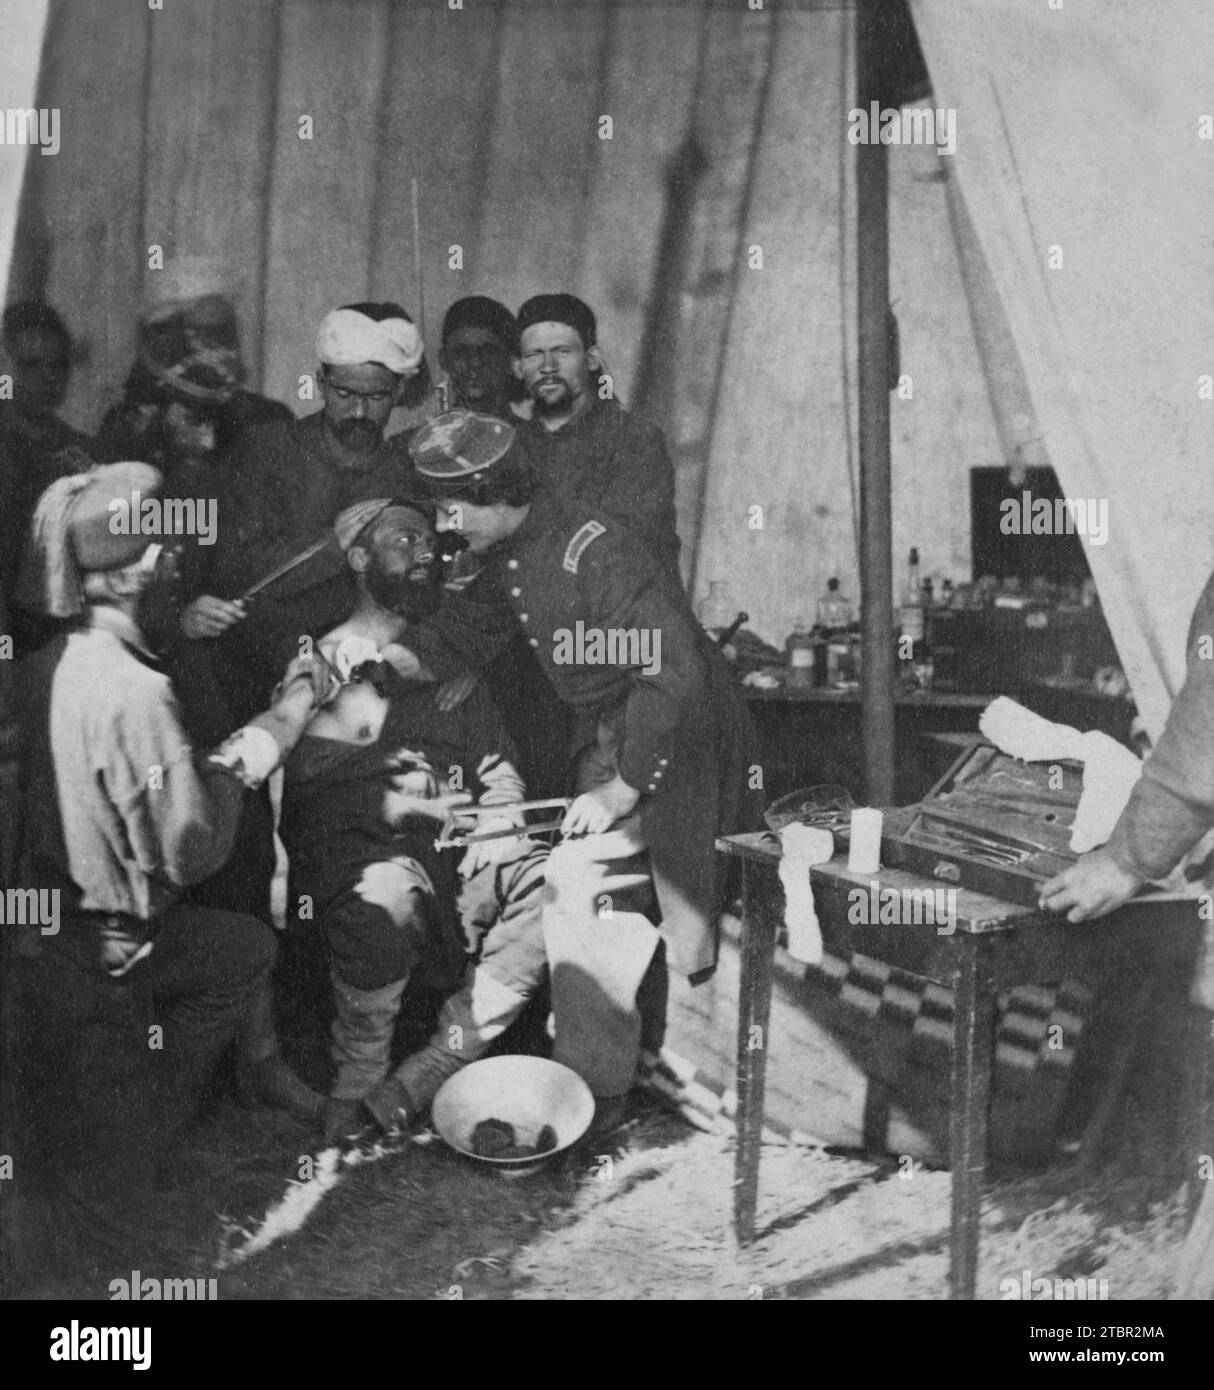 1861: Krankenhausszene in der Festung Monroe, Virginia. Stereograph zeigt Zouave-Soldaten, möglicherweise aus dem 5. New Yorker Infanterieregiment, in einem Feldzug Stockfoto